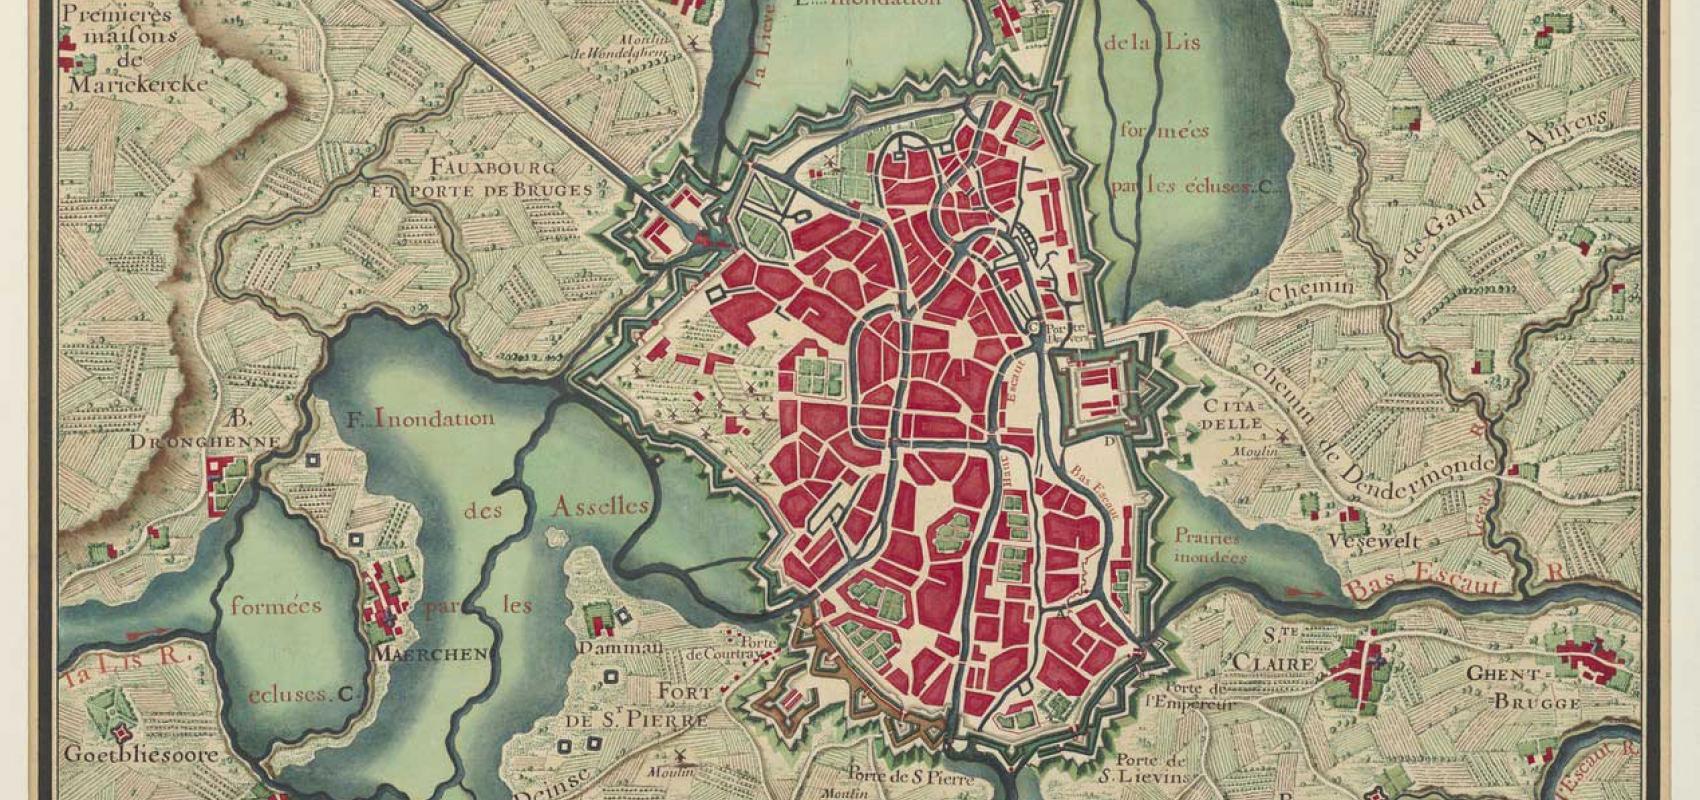 Plan de Gand, dans Cartes des environs de plusieurs places entre l'Escault et la Meuse, vers 1700.  BnF, département des Cartes et plans -  - BnF